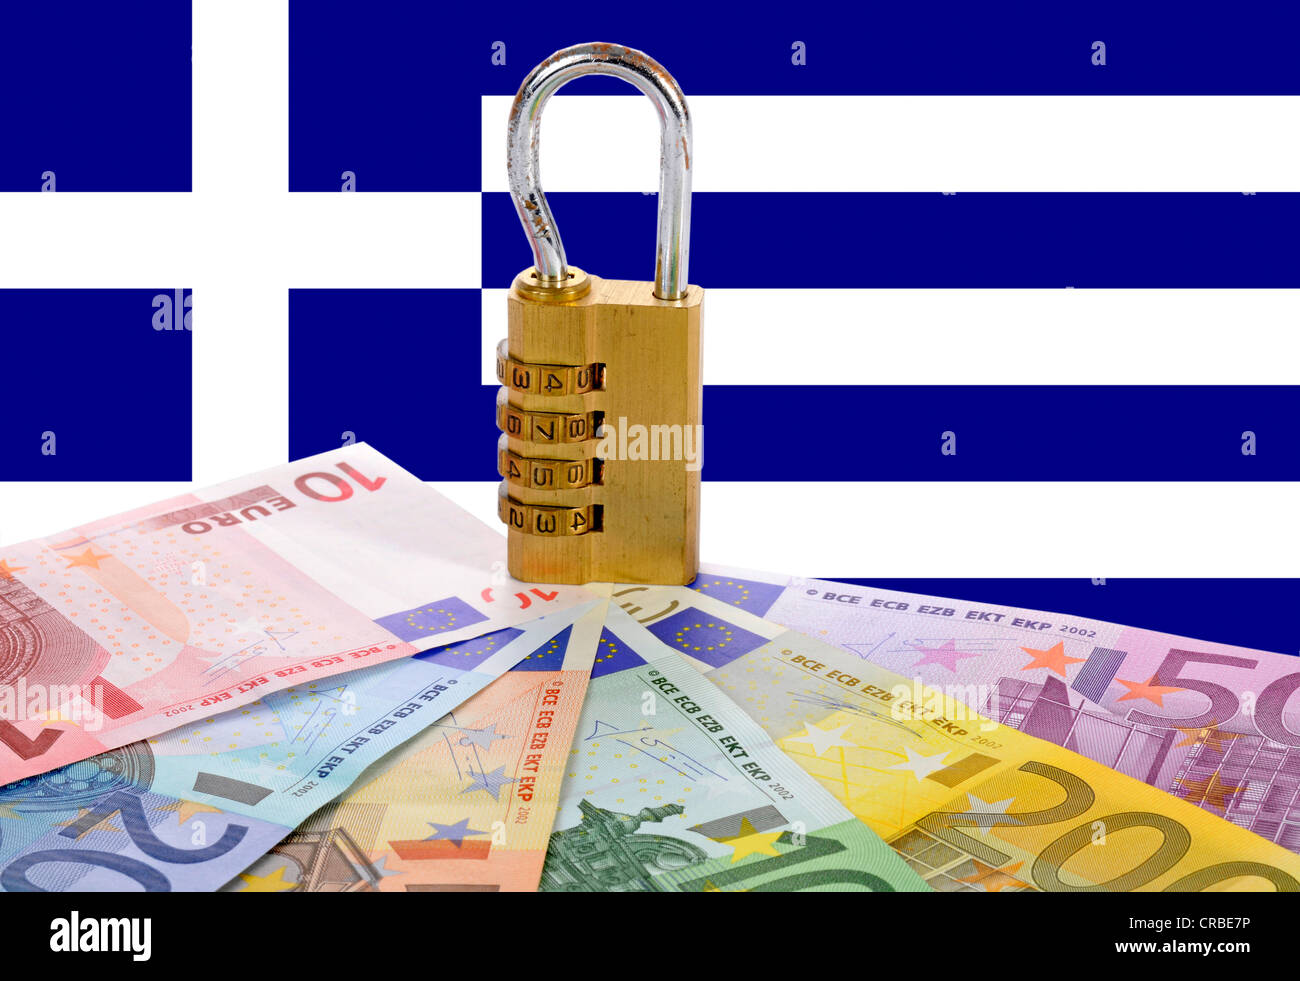 Serrure à combinaison sur les billets en euros devant le drapeau national de la Grèce, de l'image symbolique de la sécurité change Banque D'Images